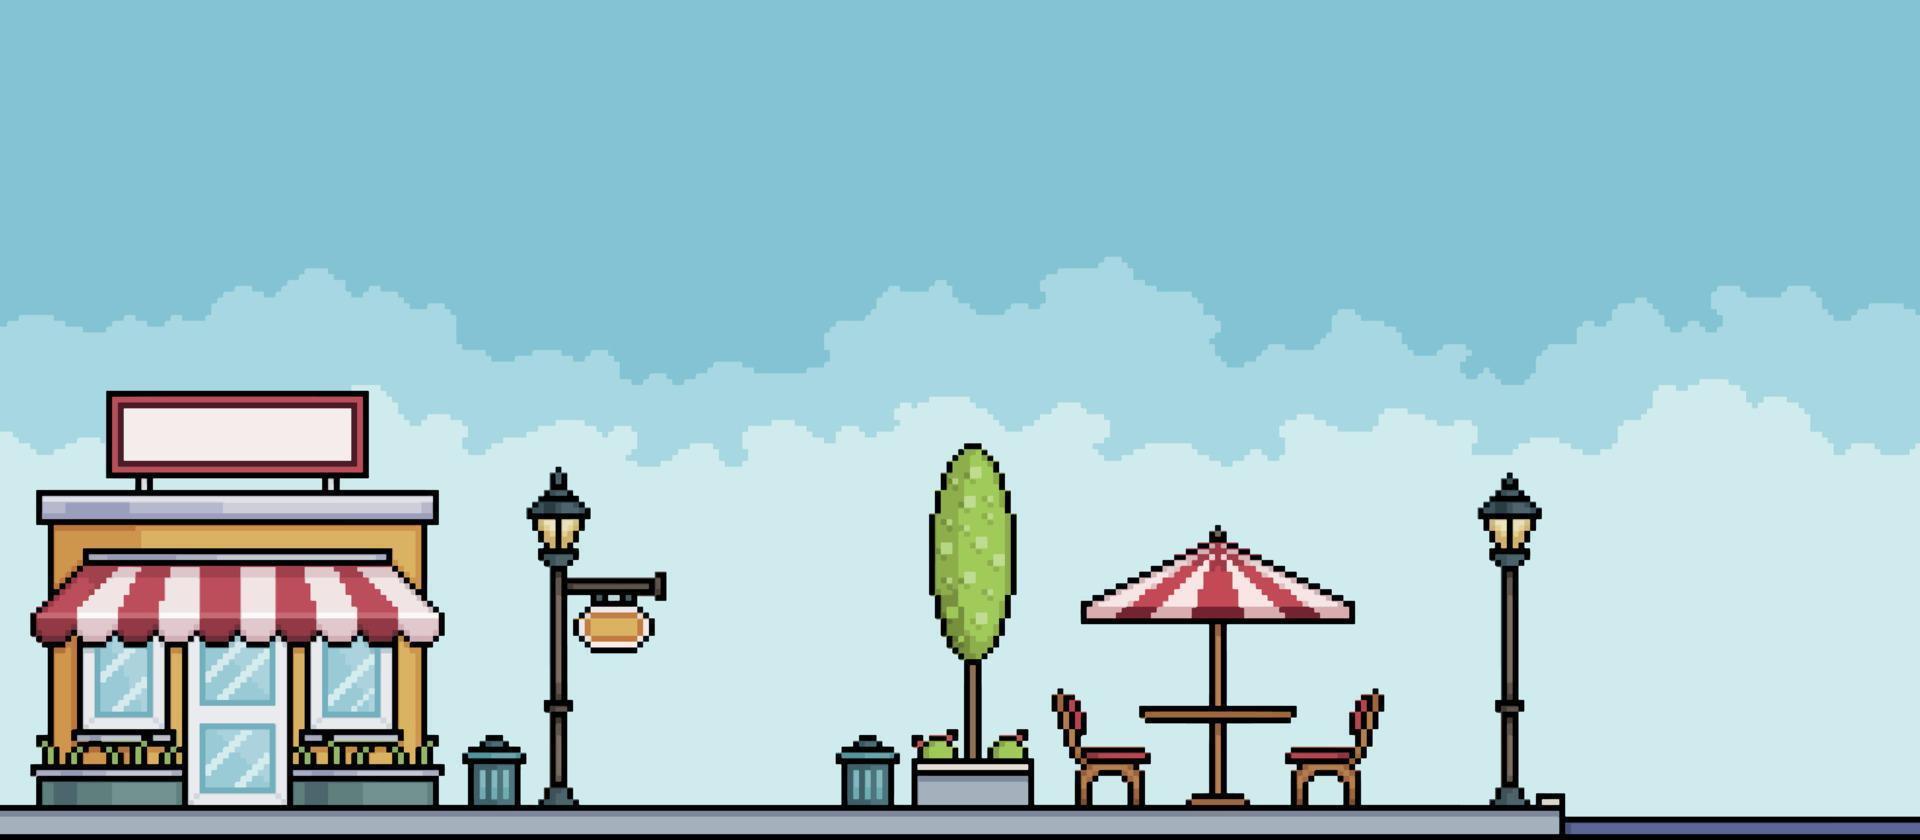 pixelkonstbutik på parktorget med träd, stolpar och stadslandskap för bord. stadsbildsbakgrund för 8-bitars spel vektor